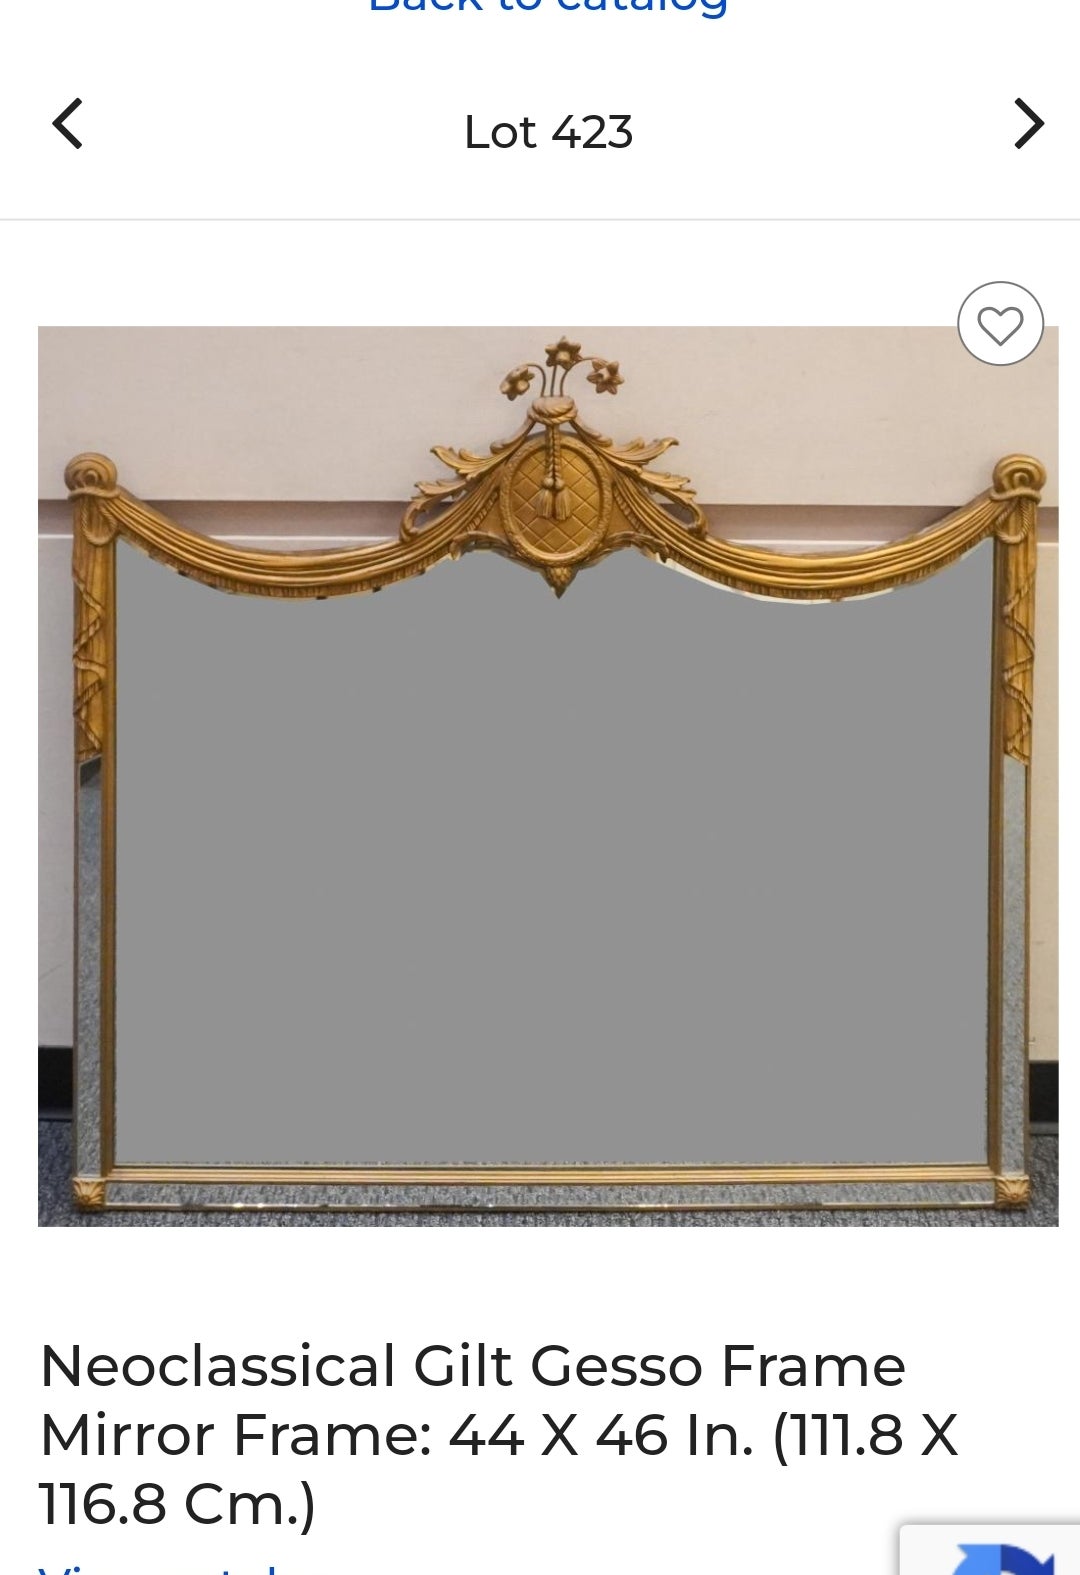 Ein neoklassischer Swag vergoldet Gesso verspiegelten Rahmen Wandspiegel. Schwerer Rahmen mit Holzrückwand. Maße: 46